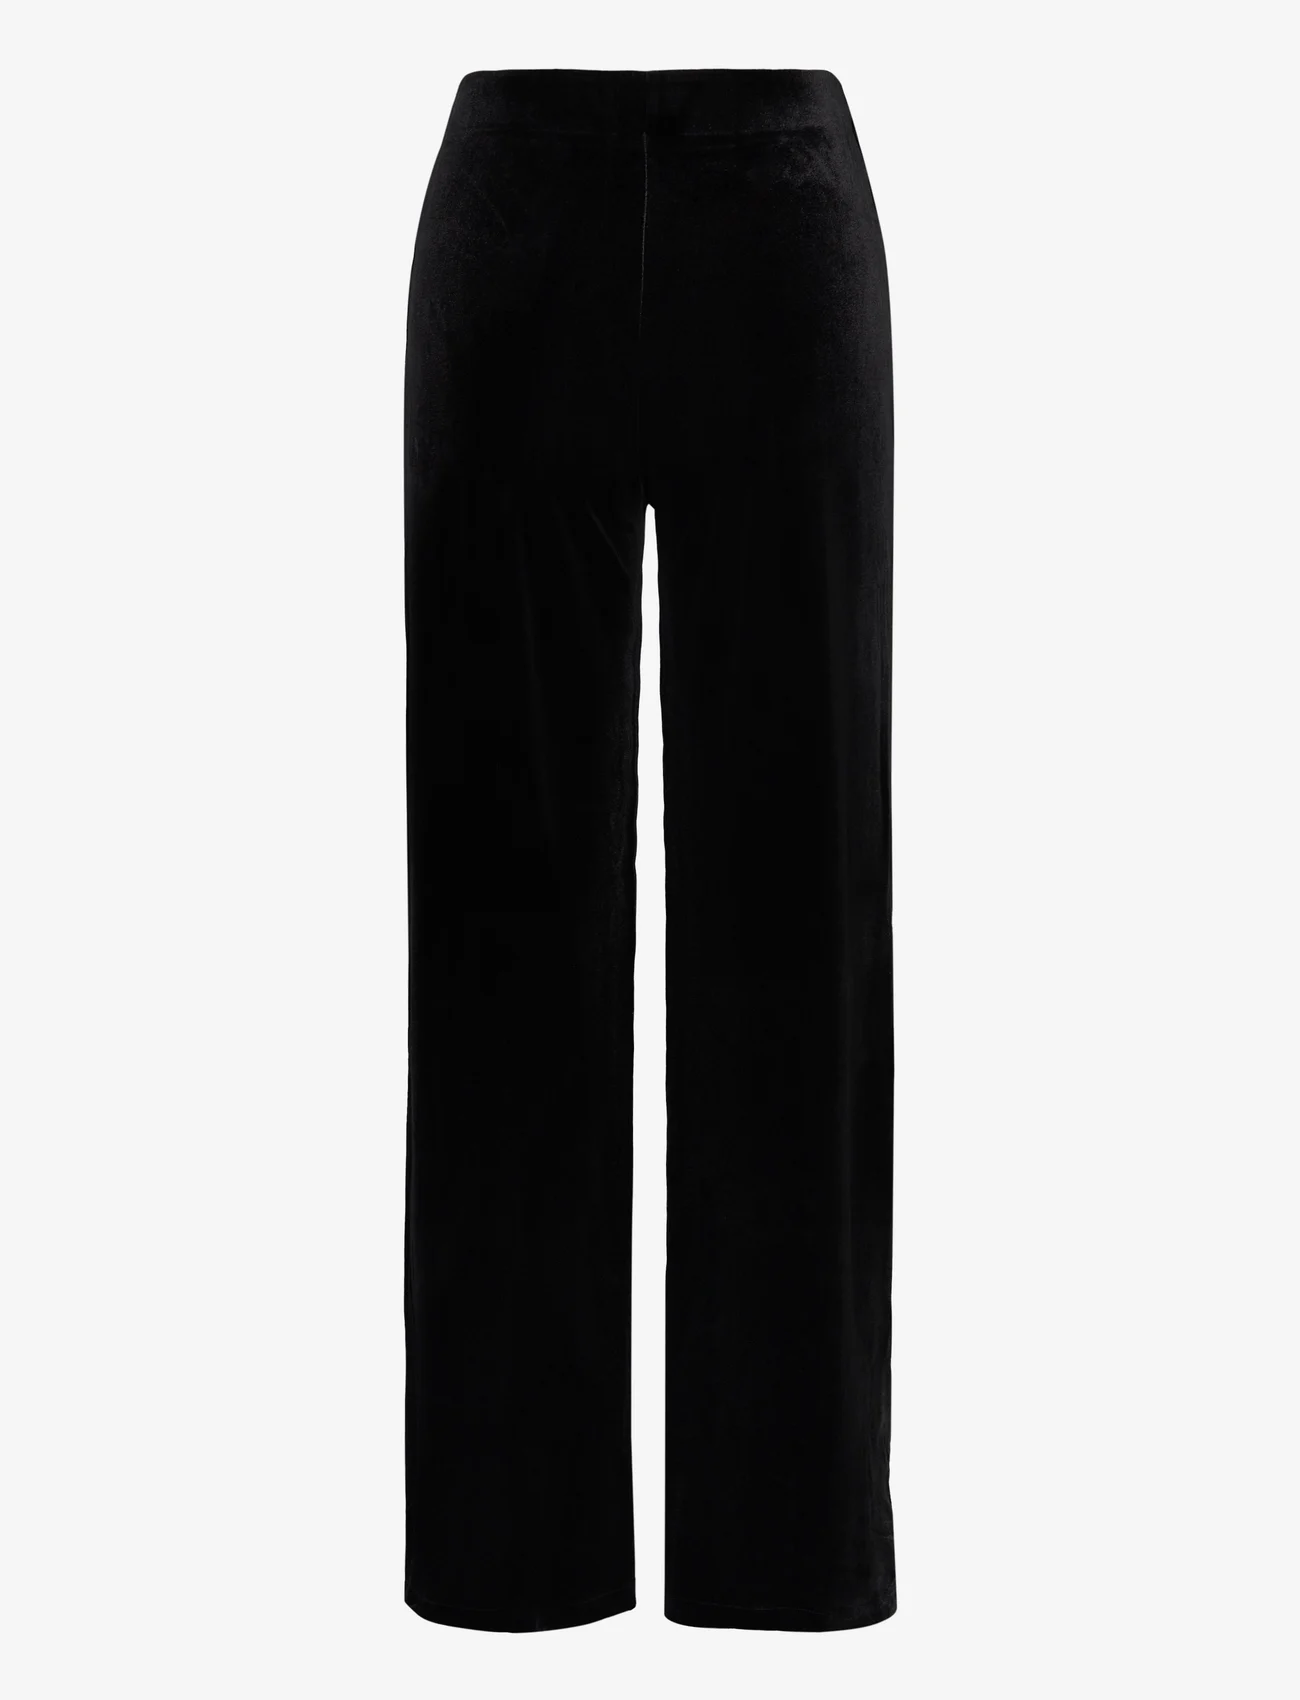 Mango - Velvet wideleg trousers - laveste priser - black - 1